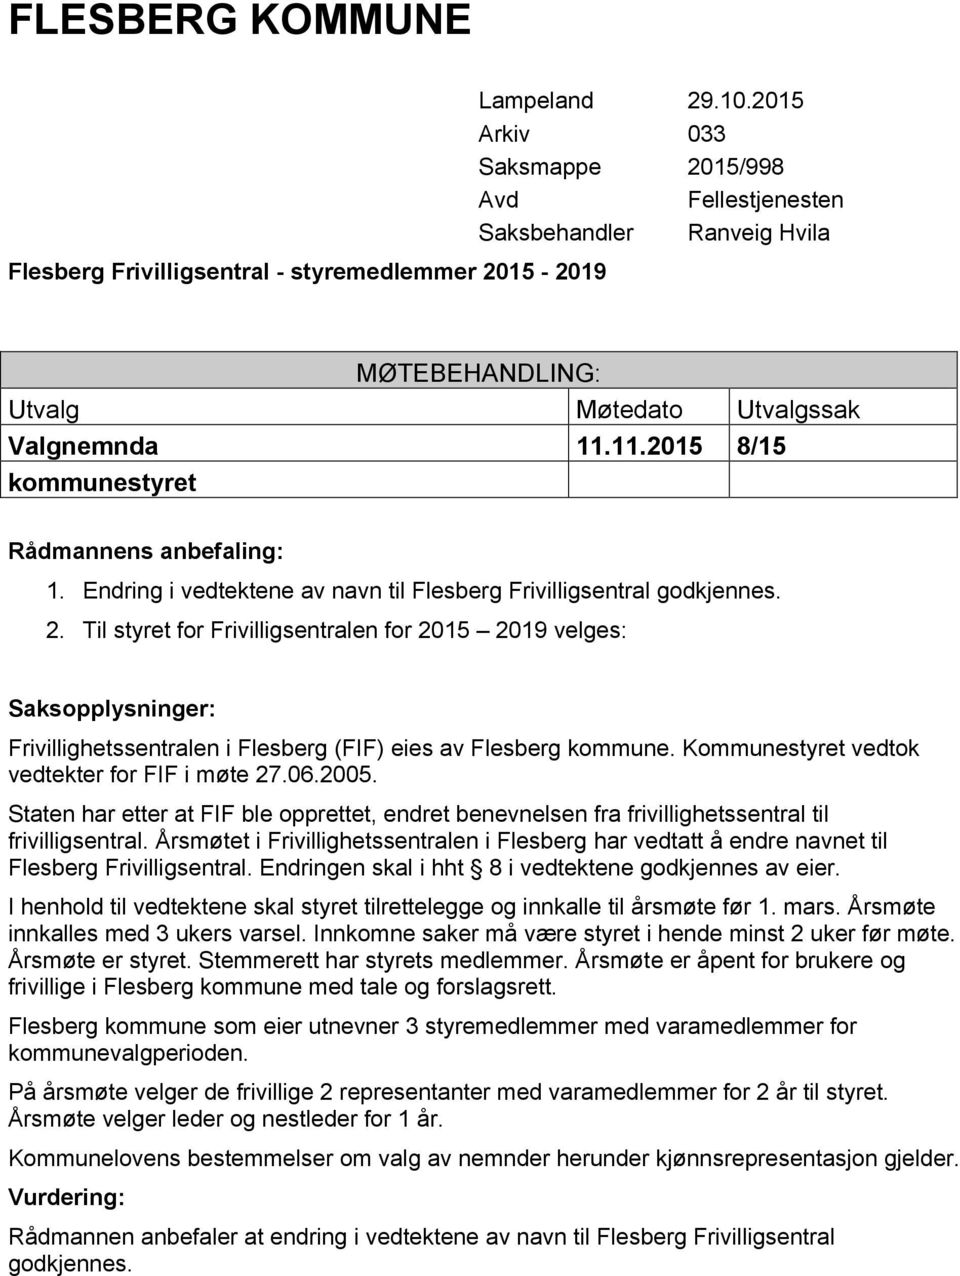 Årsmøtet i Frivillighetssentralen i Flesberg har vedtatt å endre navnet til Flesberg Frivilligsentral. Endringen skal i hht 8 i vedtektene godkjennes av eier.